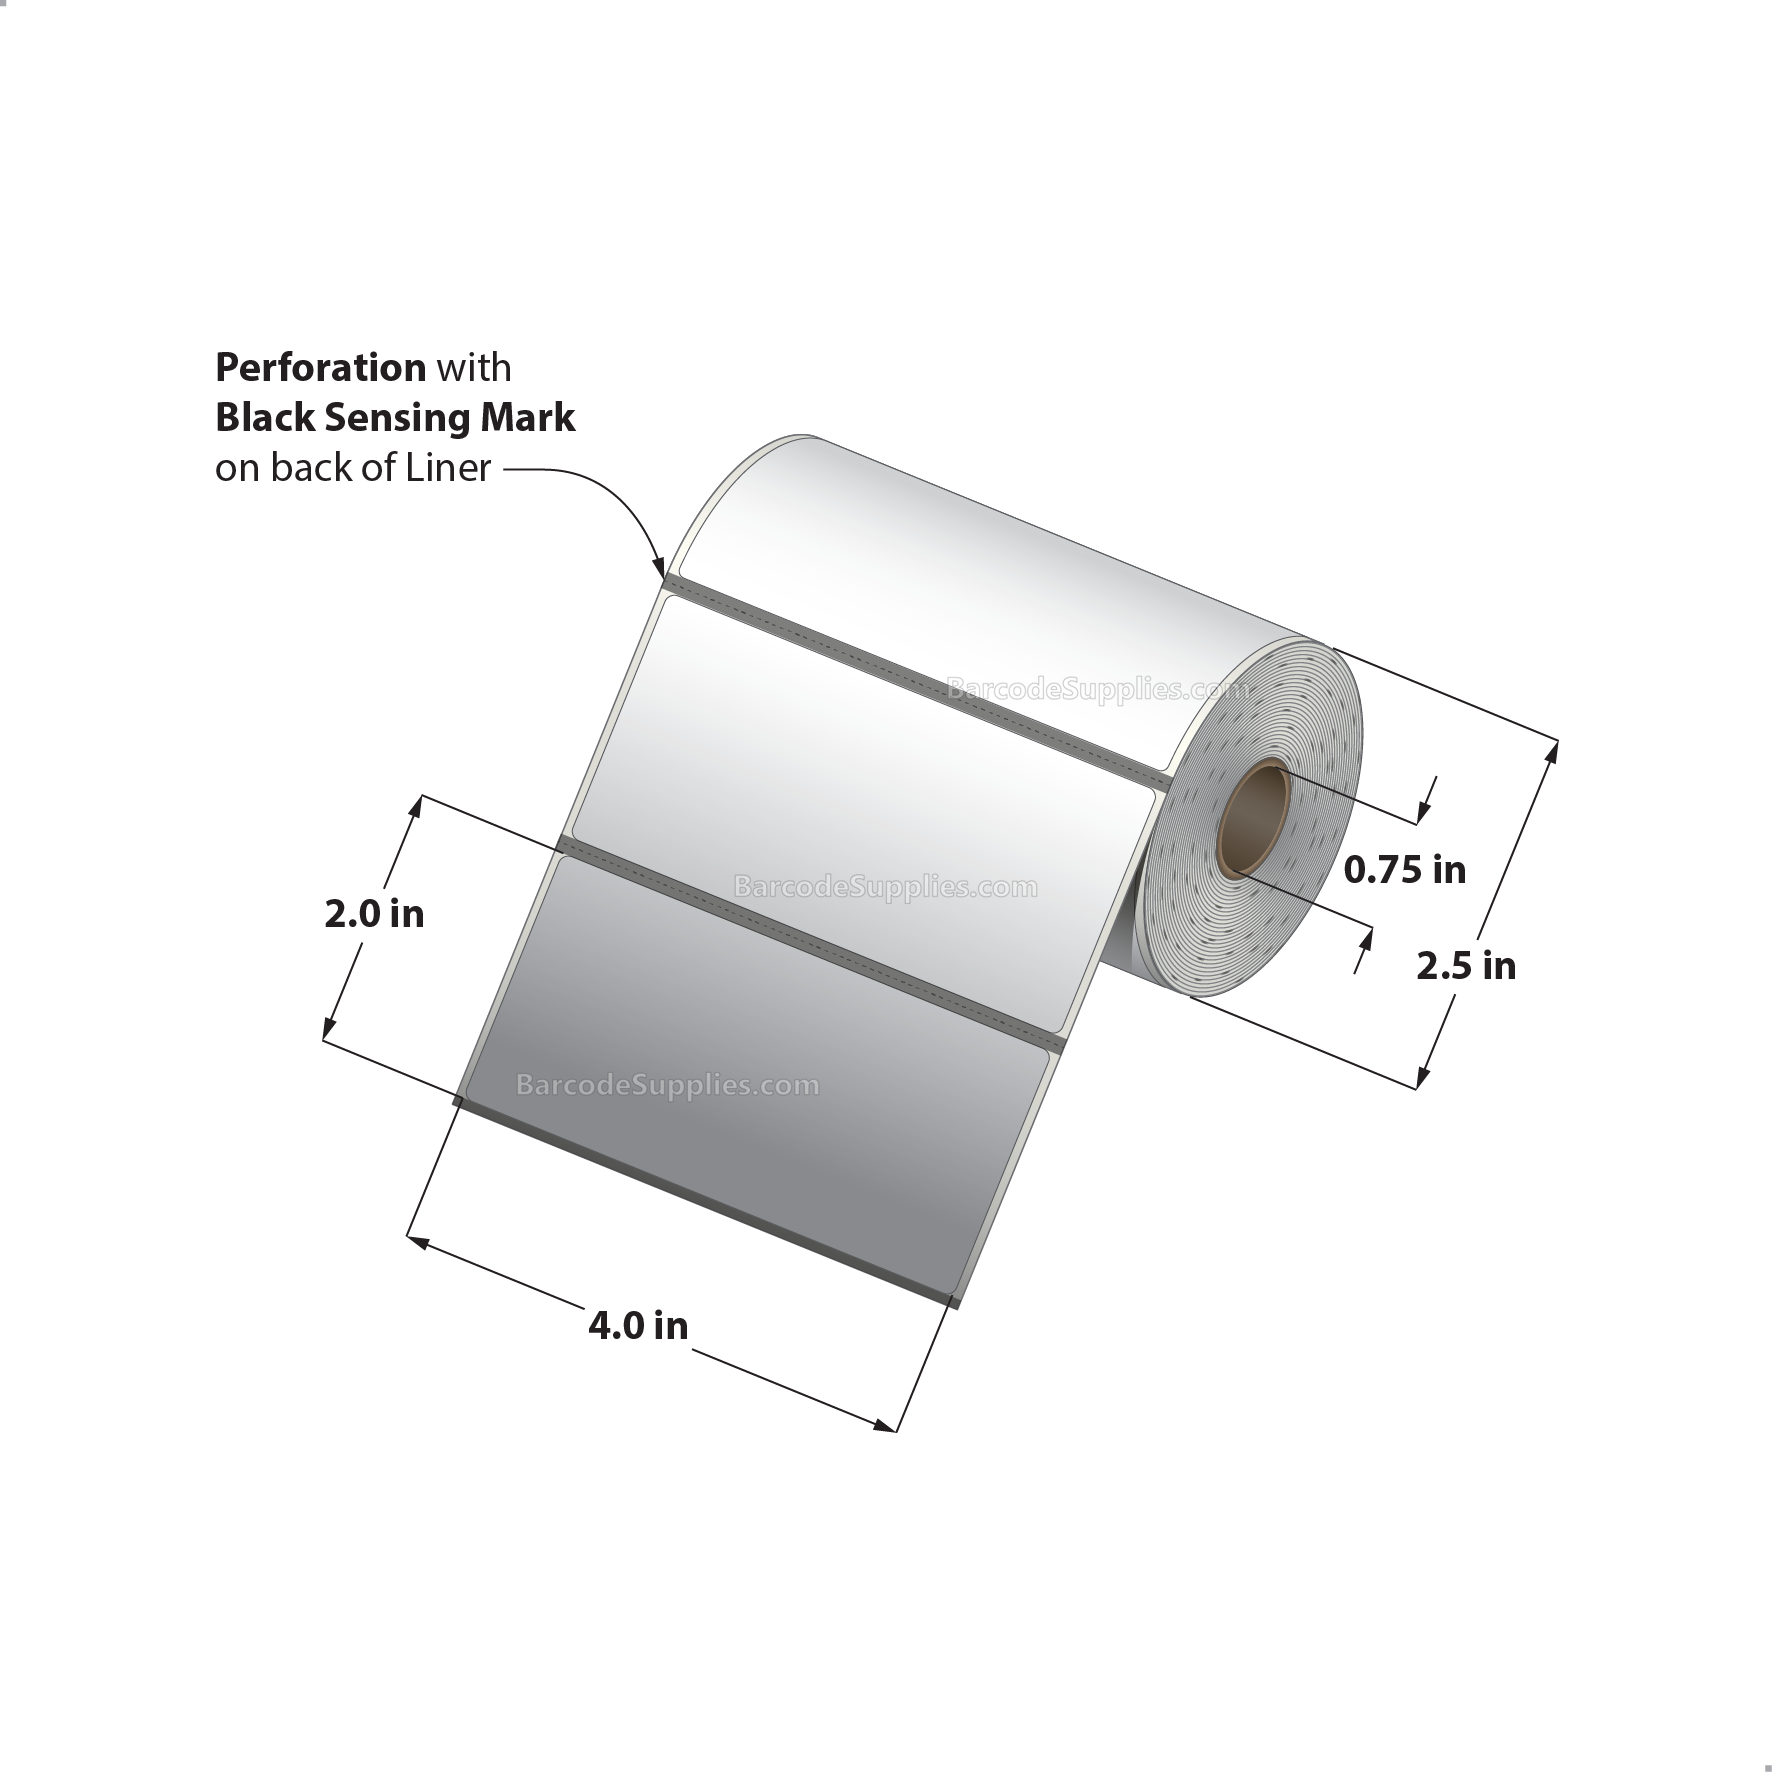 Etiquette ZEBRA adhésive papier thermique top format 57x51mm